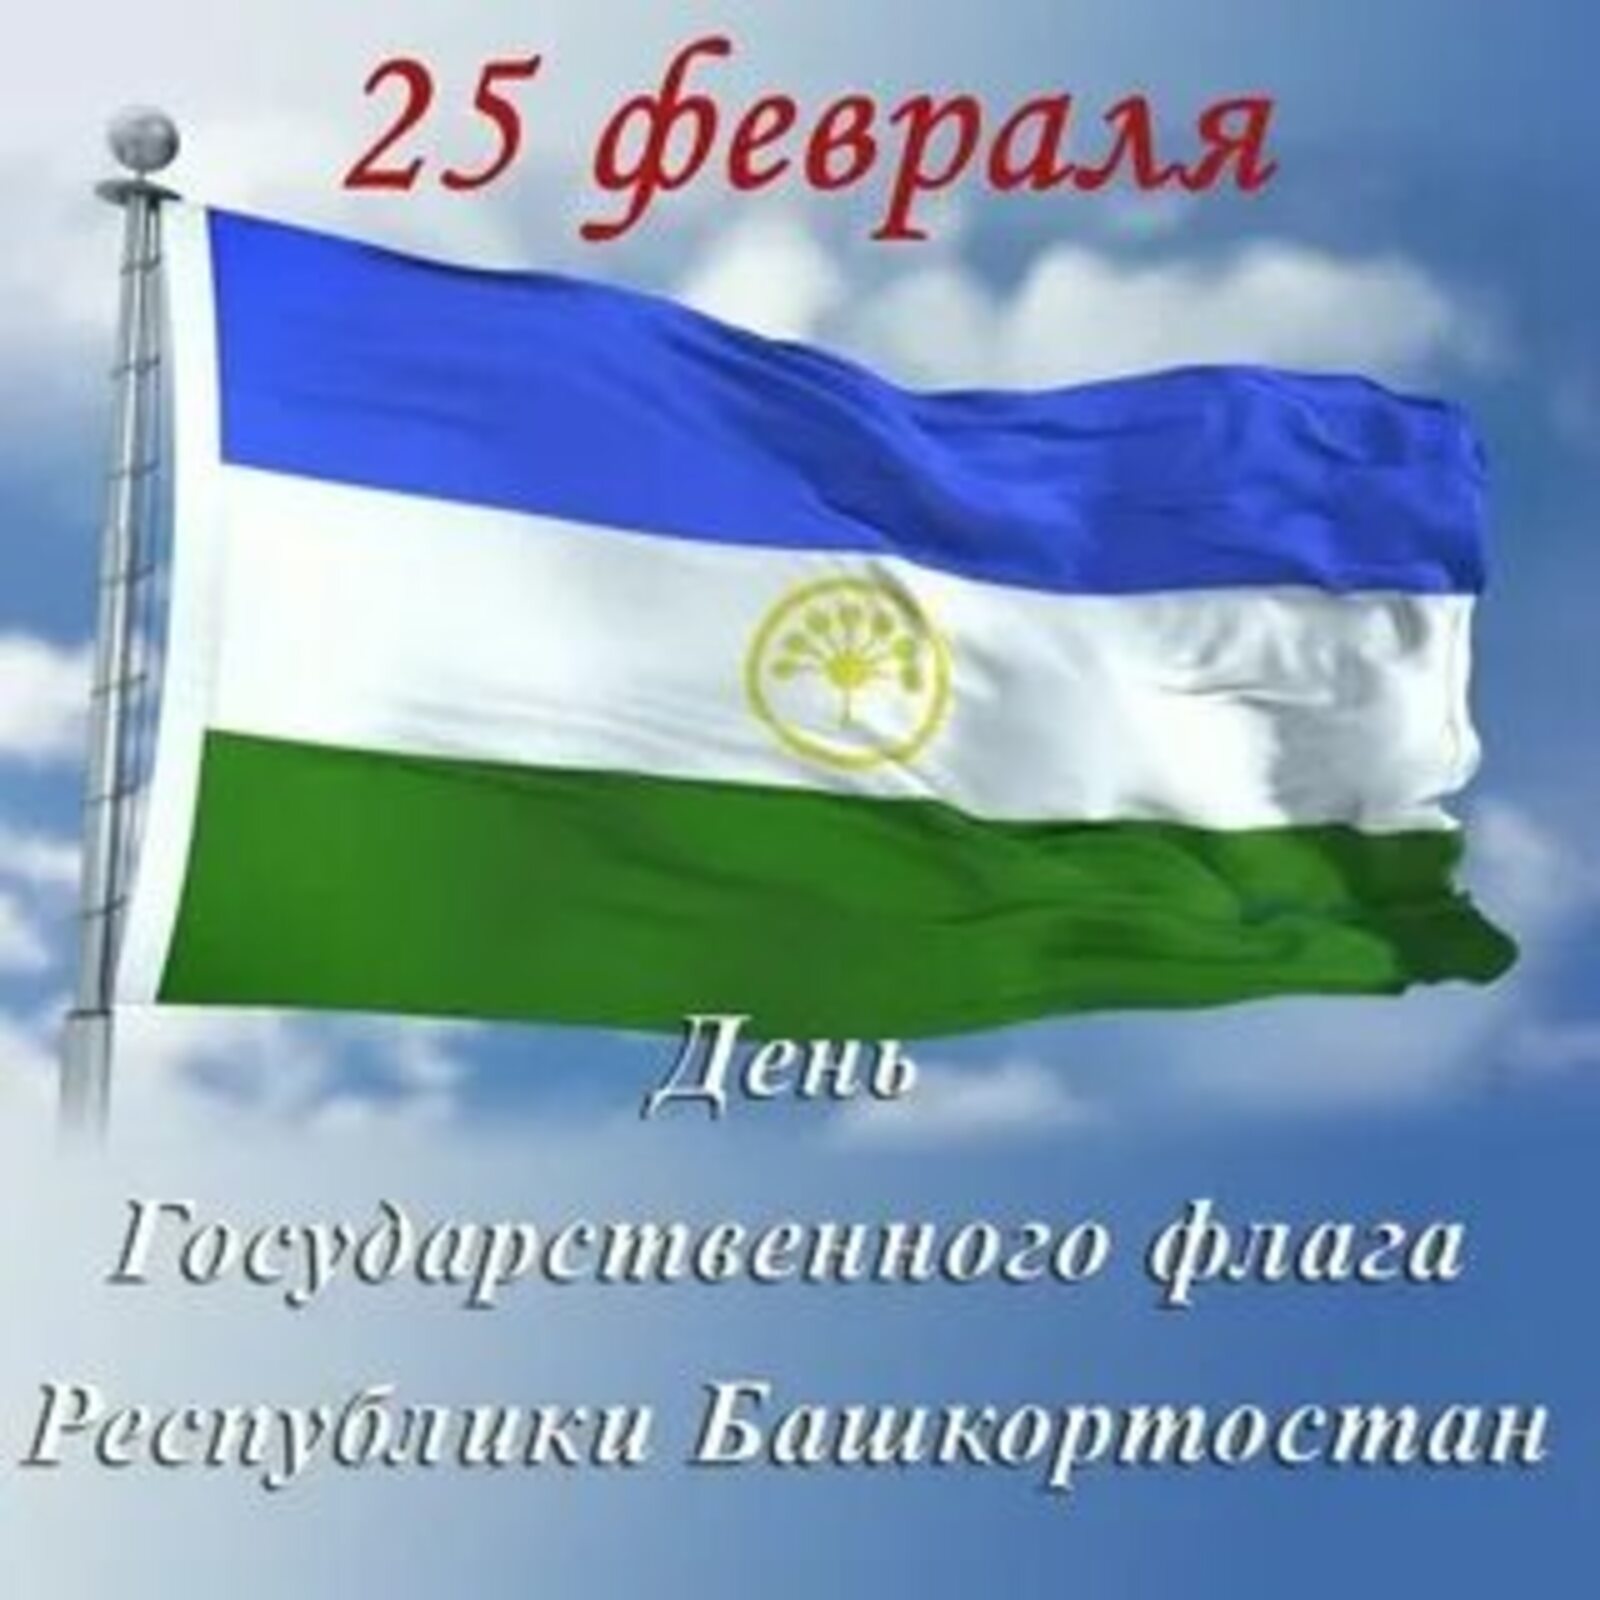 Сегодня – День Государственного флага Республики Башкортостан